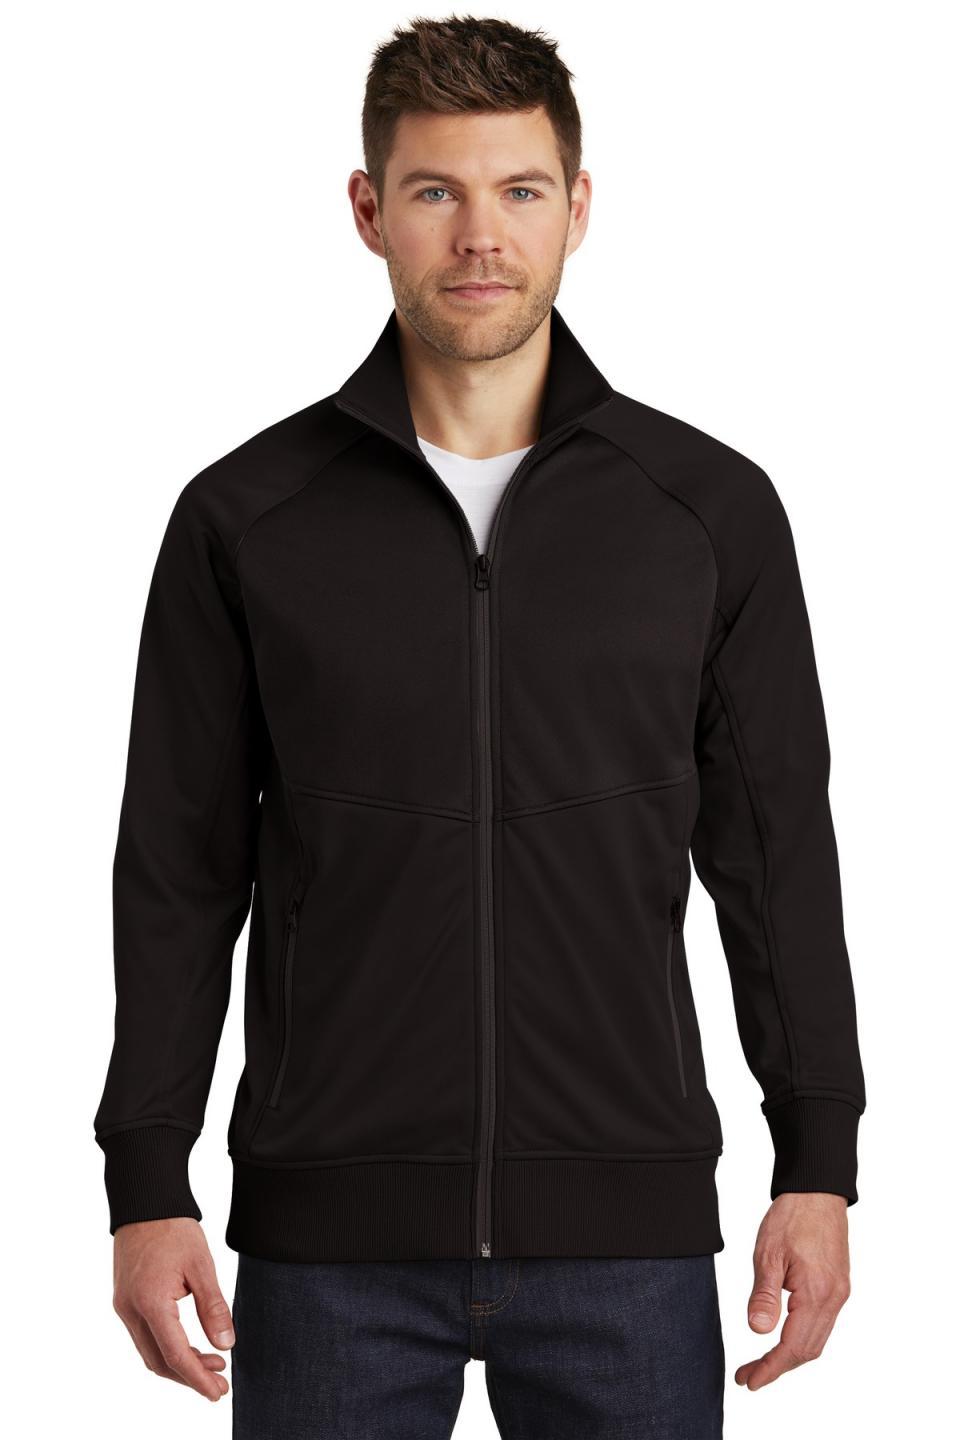 The North Face Men's Tech Full-Zip Fleece Jacket